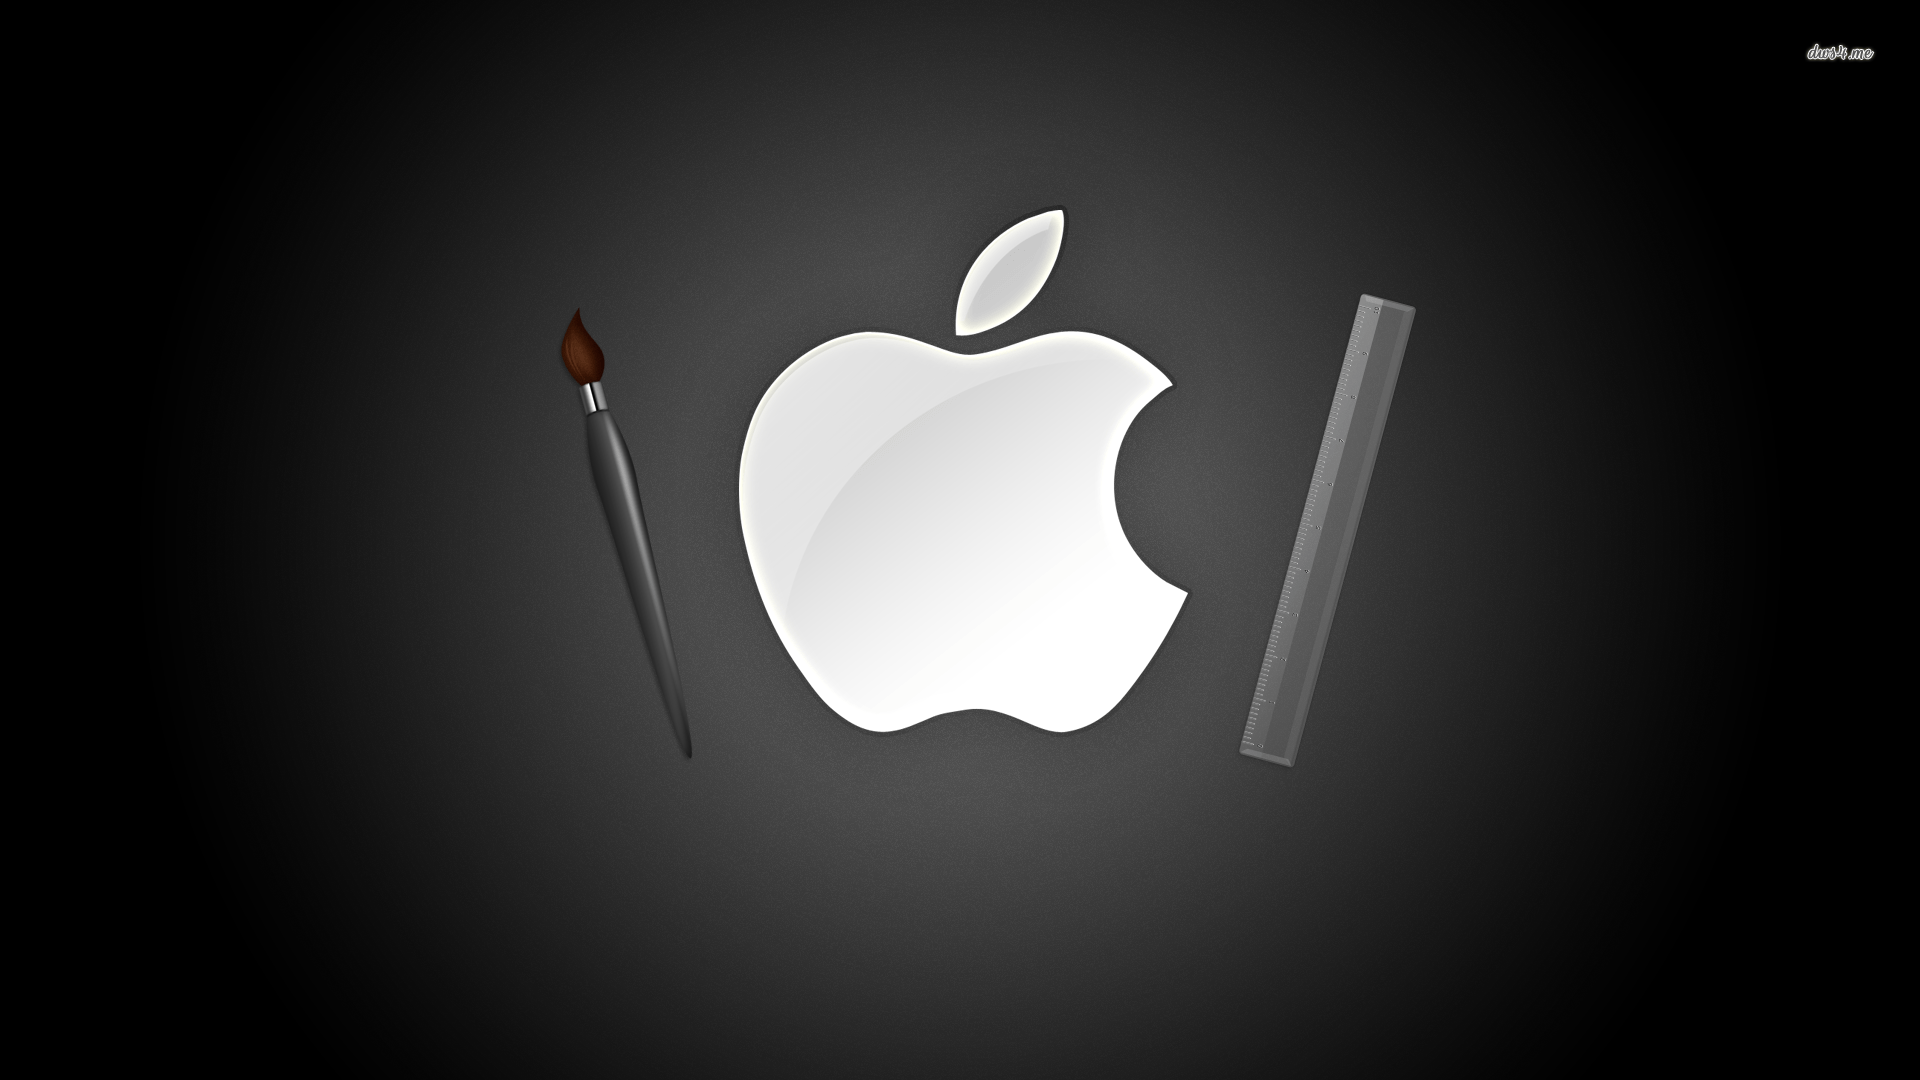 Artsy Apple Logo wallpaper wallpaper - #